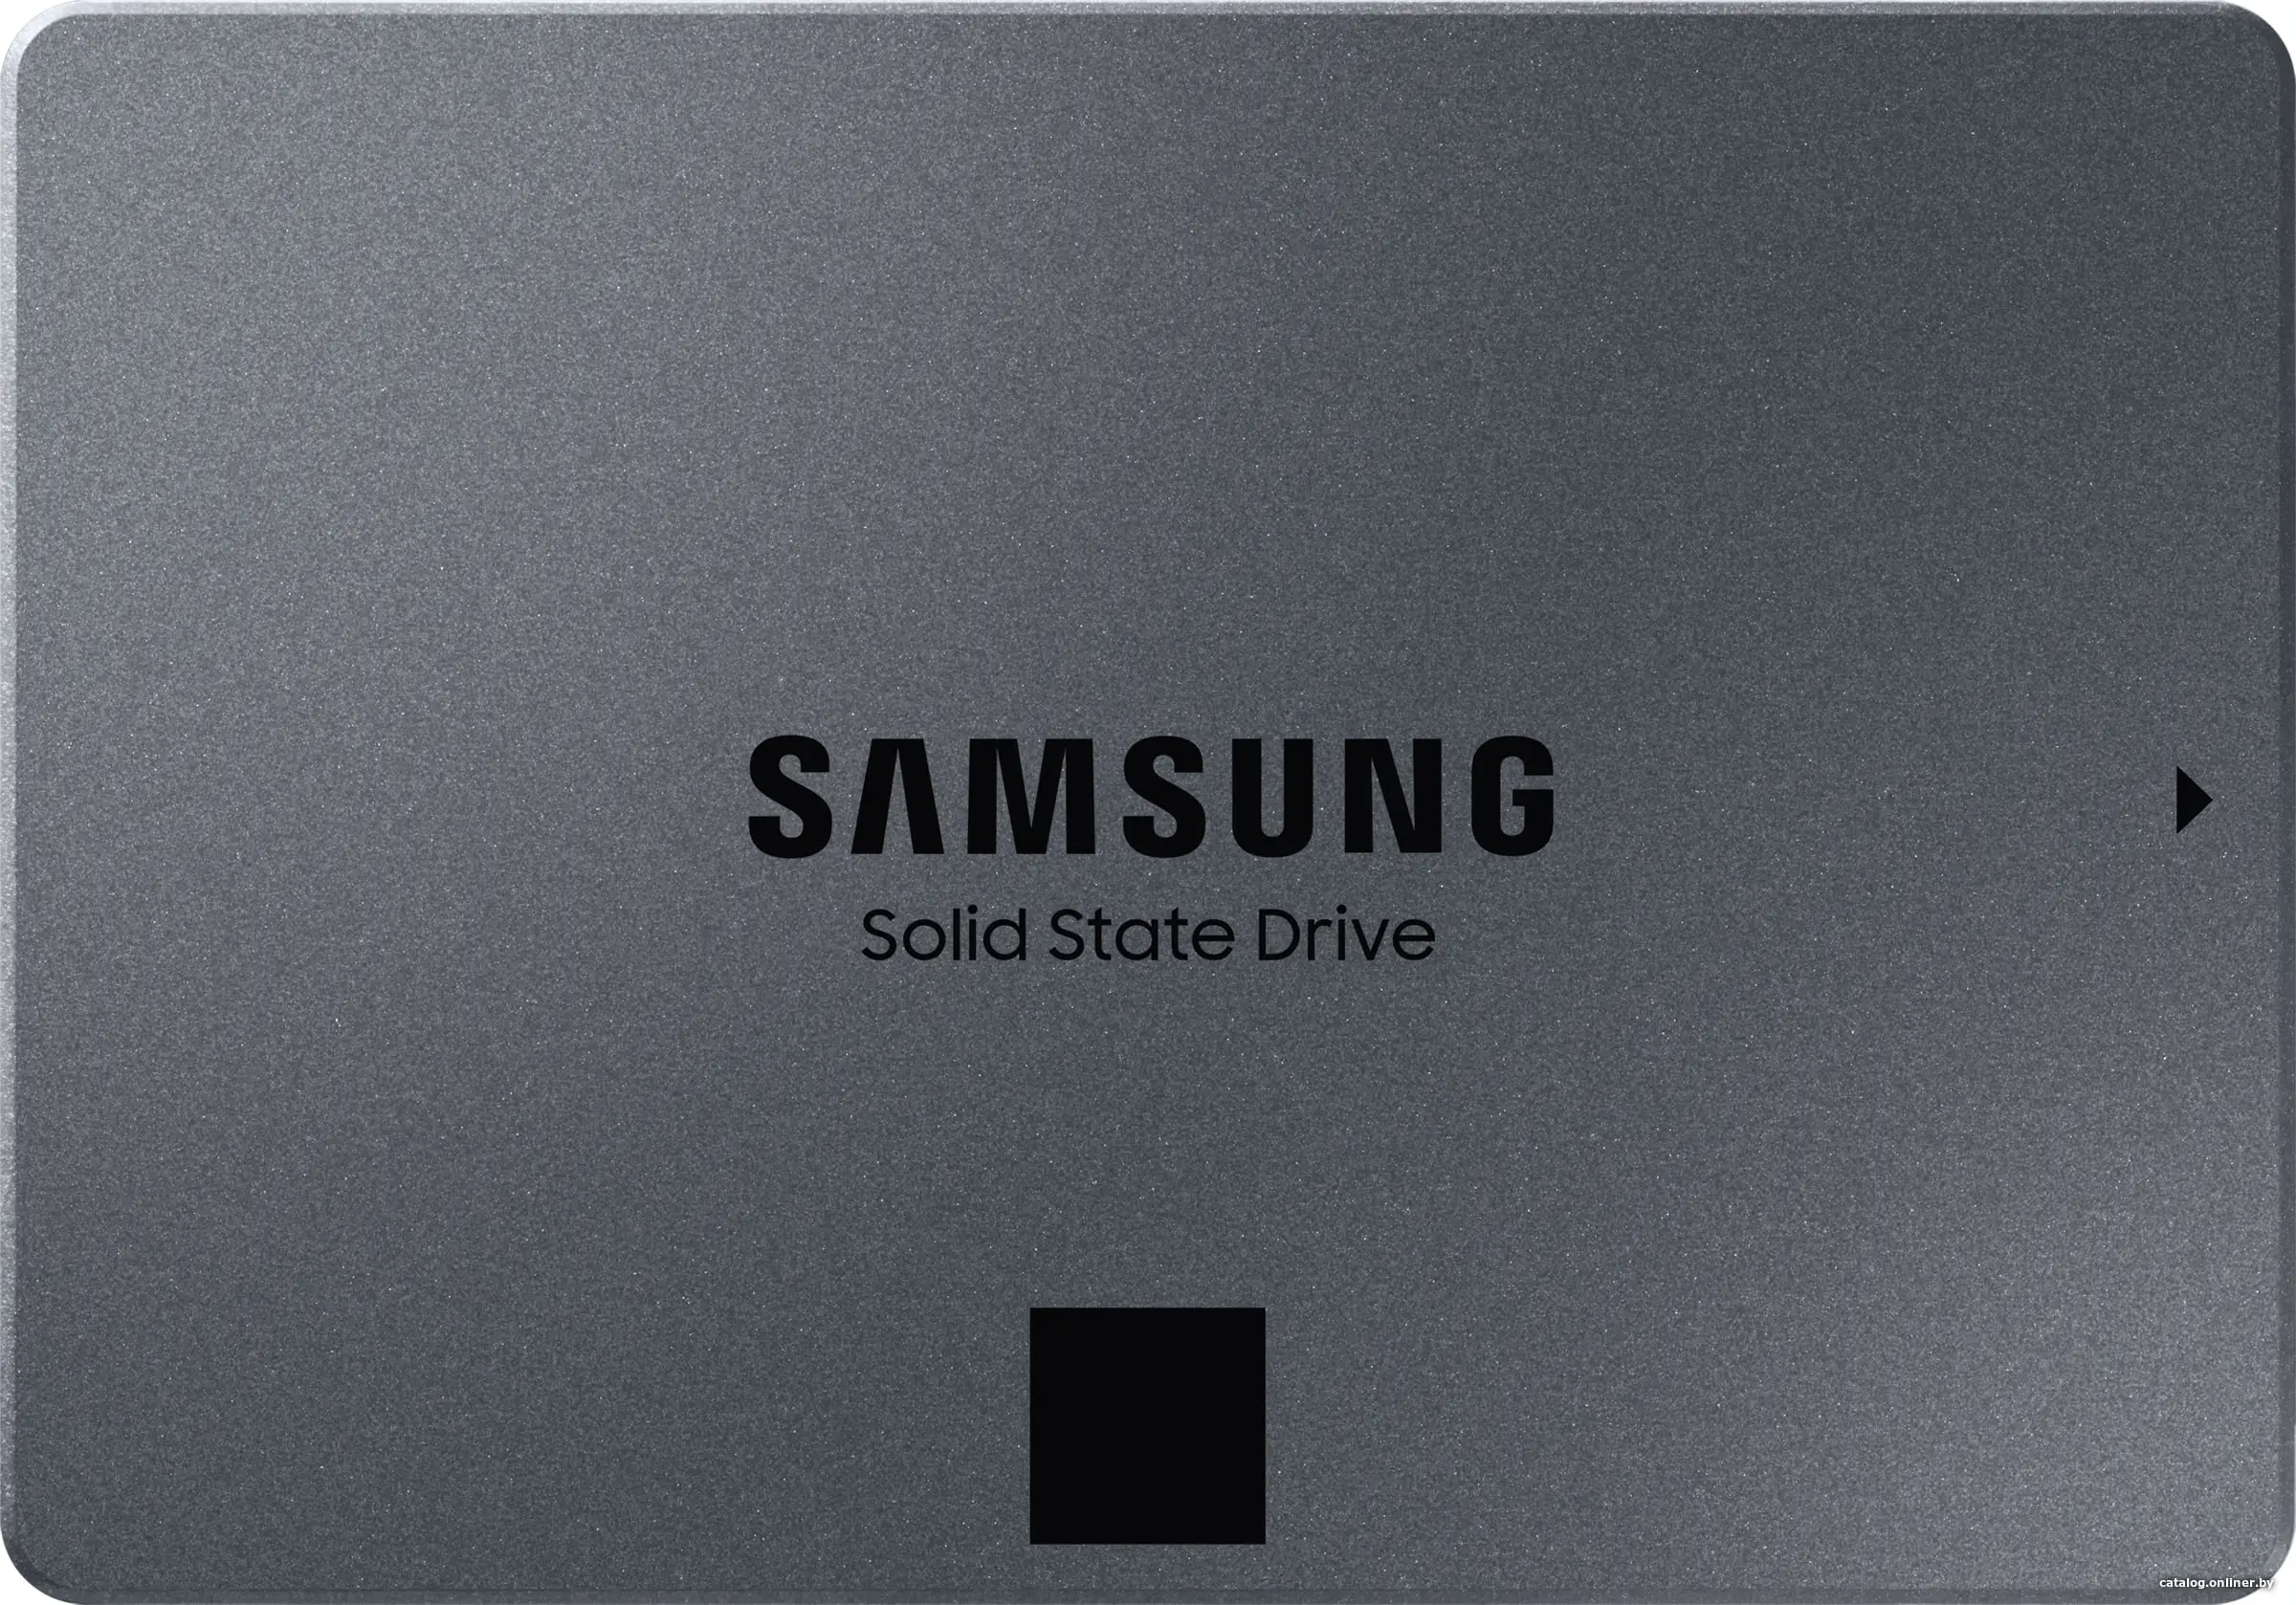 Купить 1Tb SSD Samsung 870 QVO MZ-77Q1T0BW, 2.5'', (560/530), SATA III, цена, опт и розница